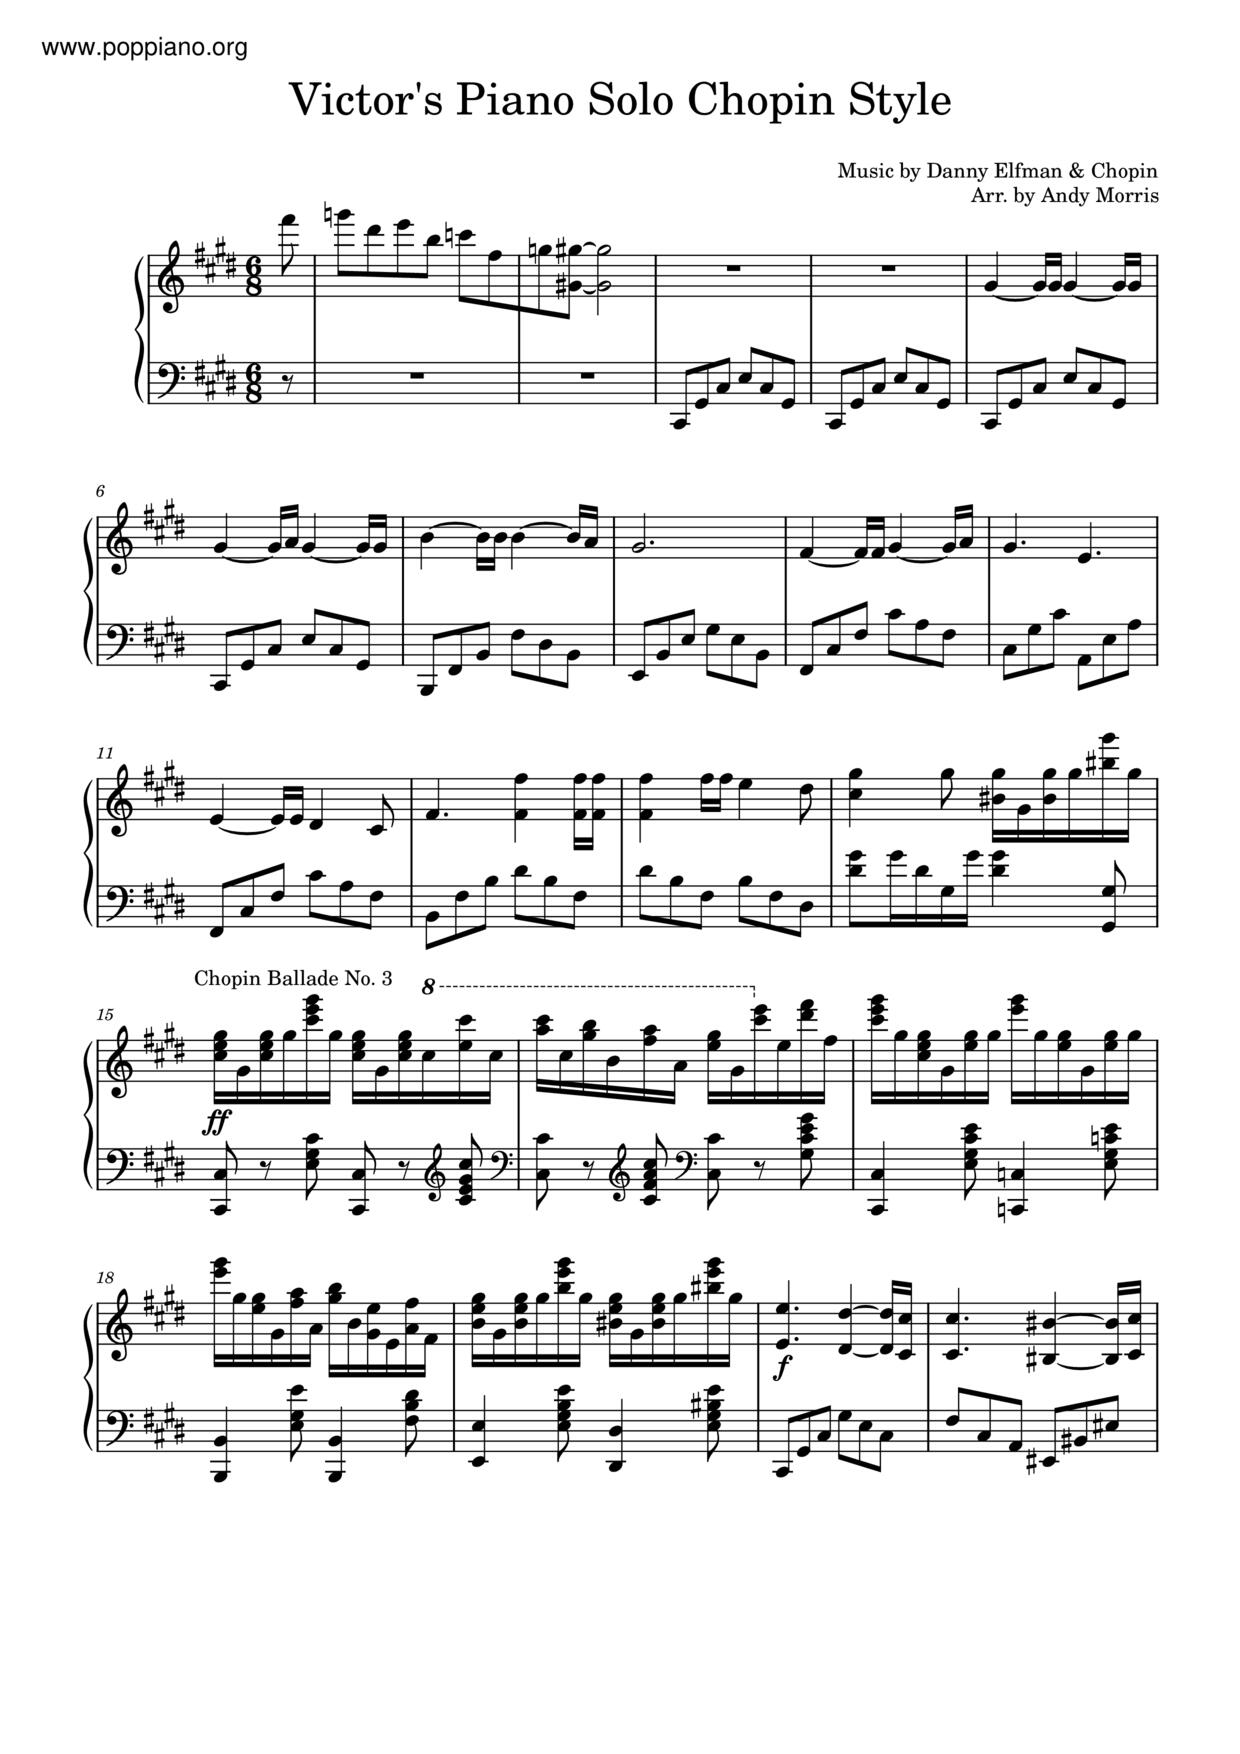 Tim Burton's Corpse Bride - Victor's Piano Soloピアノ譜